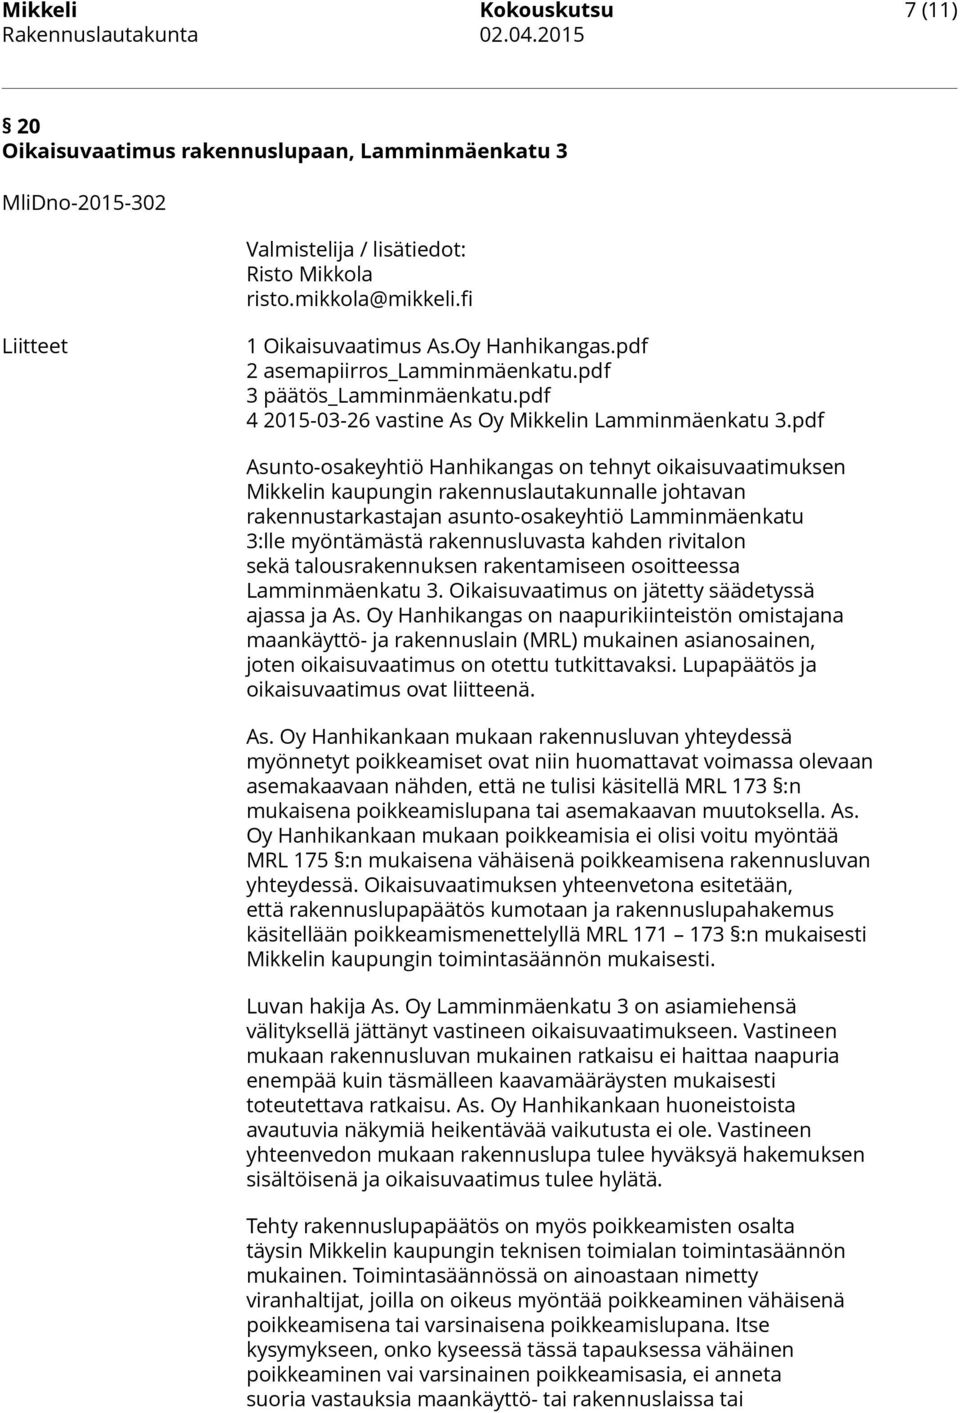 pdf Asunto-osakeyhtiö Hanhikangas on tehnyt oikaisuvaatimuksen Mikkelin kaupungin rakennuslautakunnalle johtavan rakennustarkastajan asunto-osakeyhtiö Lamminmäenkatu 3:lle myöntämästä rakennusluvasta